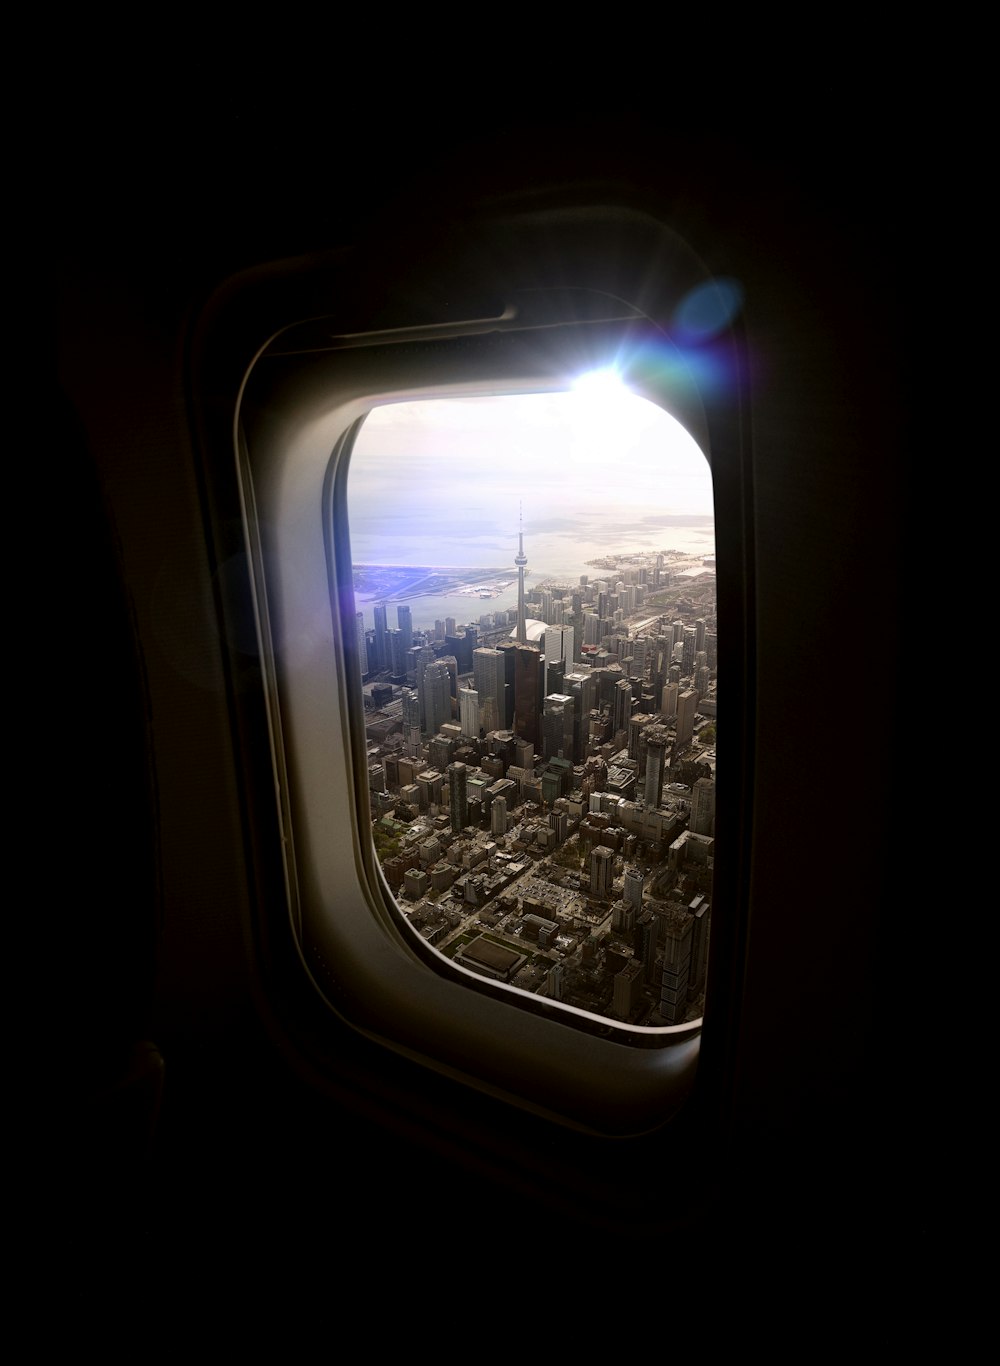 비행기 창문에서 바라본 도시 풍경